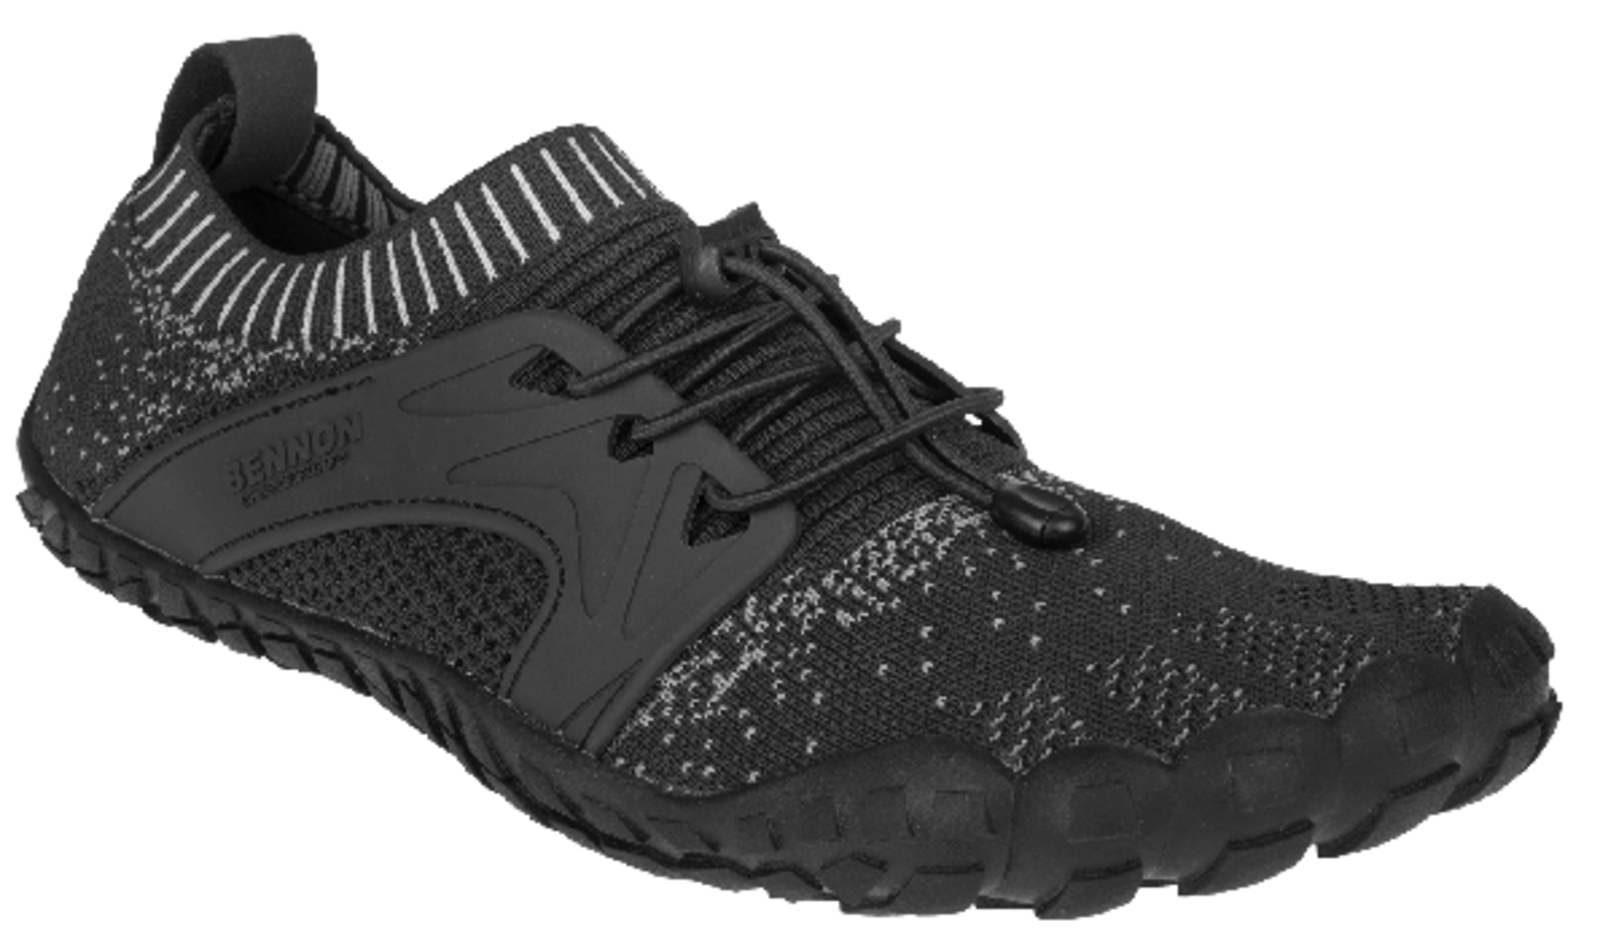 Voľnočasová barefoot obuv Bennon Bosky - veľkosť: 36, farba: čierna/biela